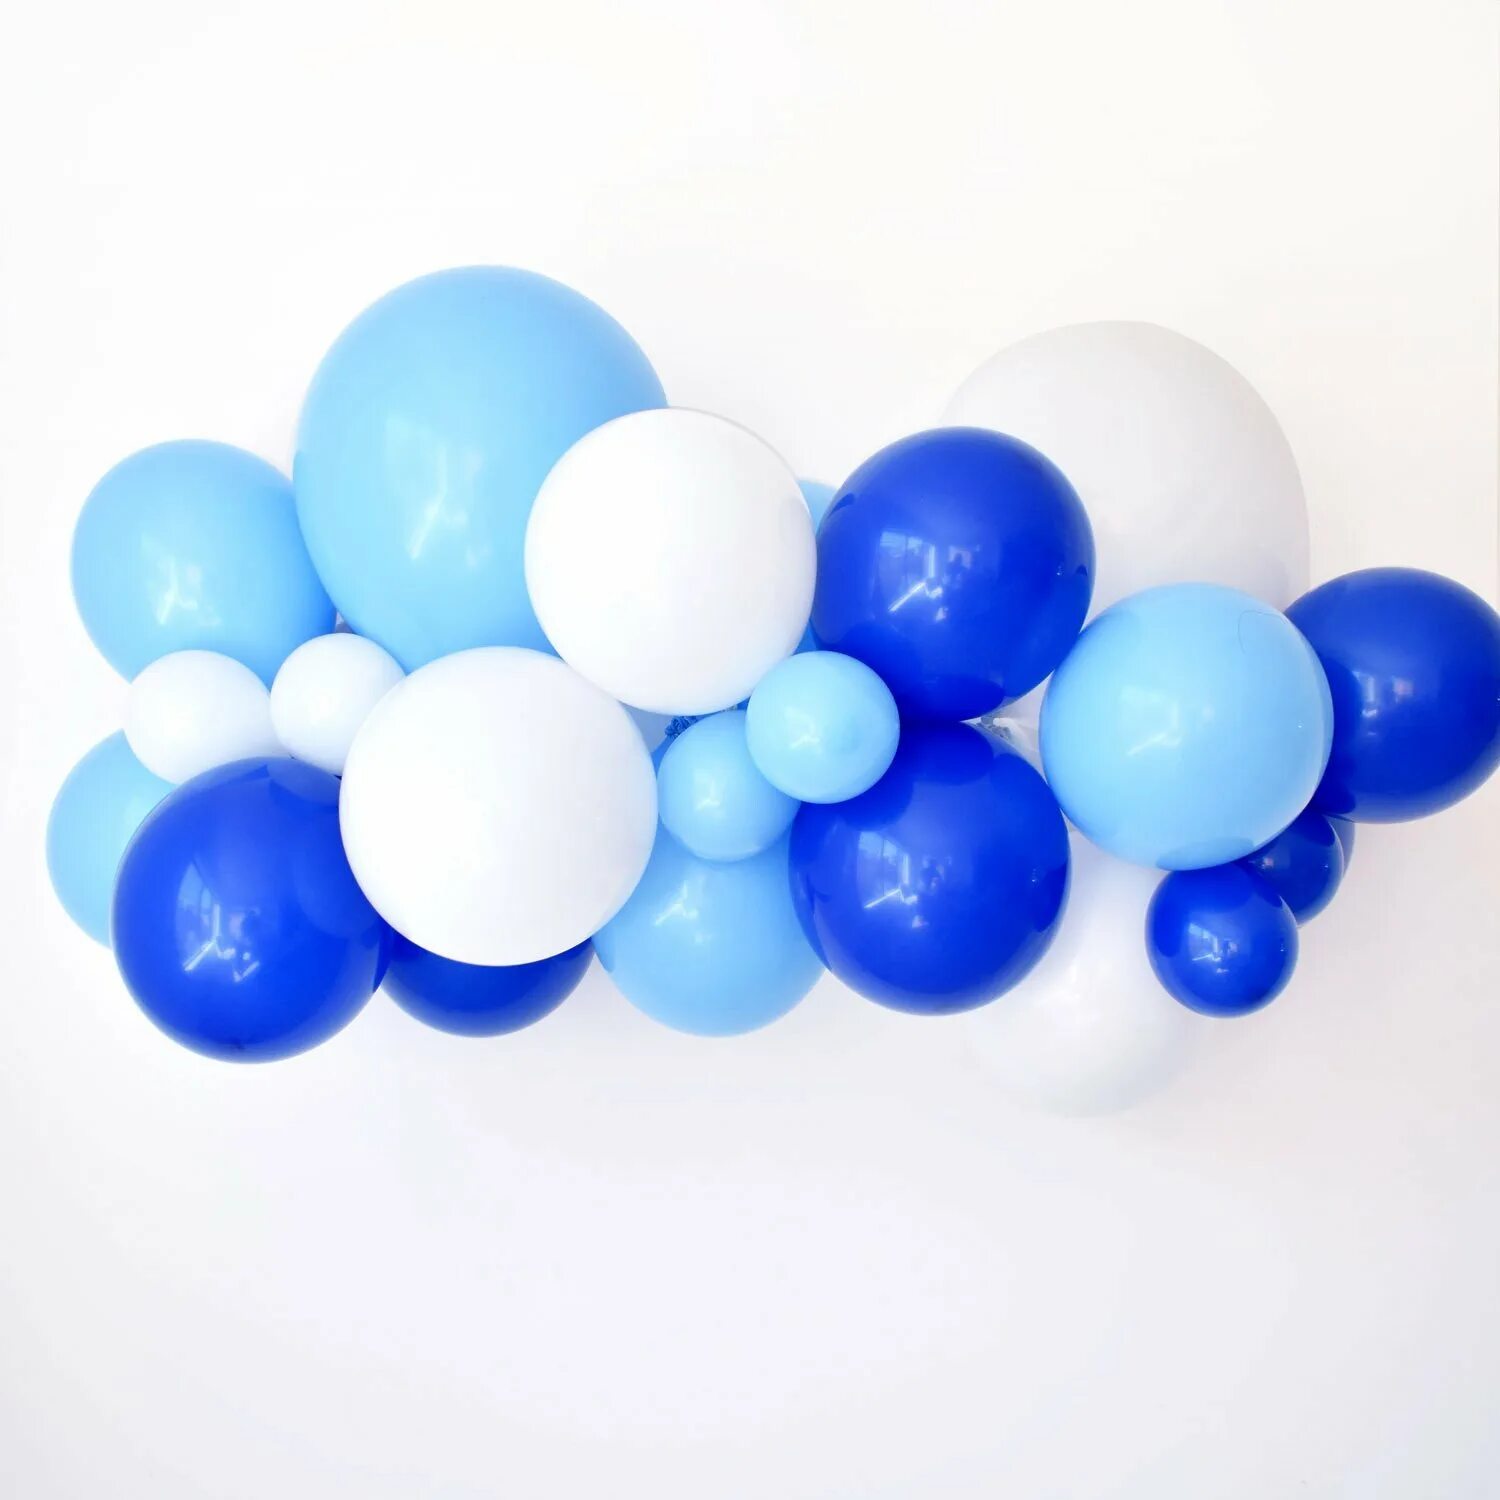 Сине белые шары. Гирлянда из шаров синяя. Гирлянда из шаров бело синяя. Гирлянда из голубых шаров.